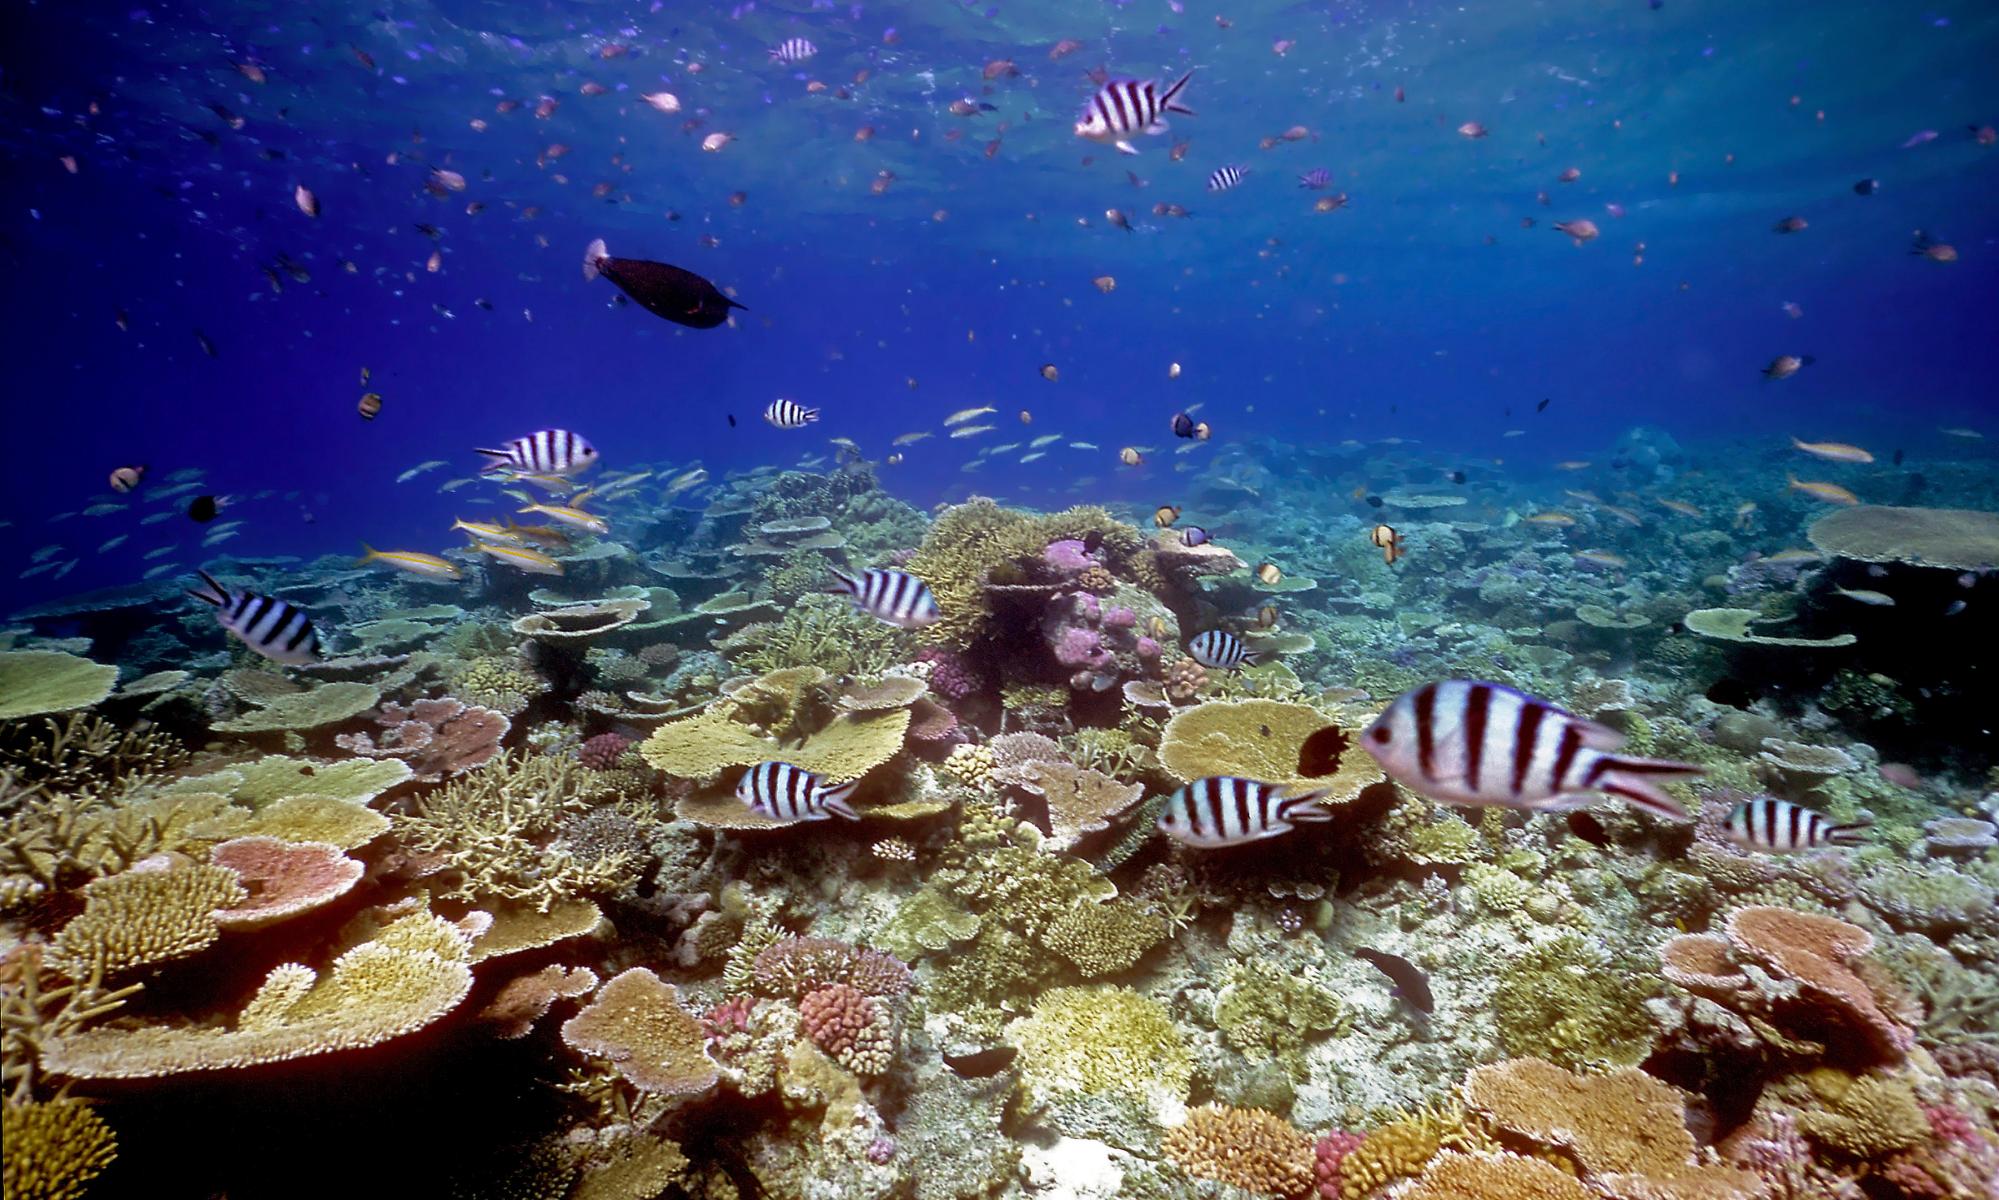 研究发现健康的珊瑚声音将鱼引诱回废弃的珊瑚礁